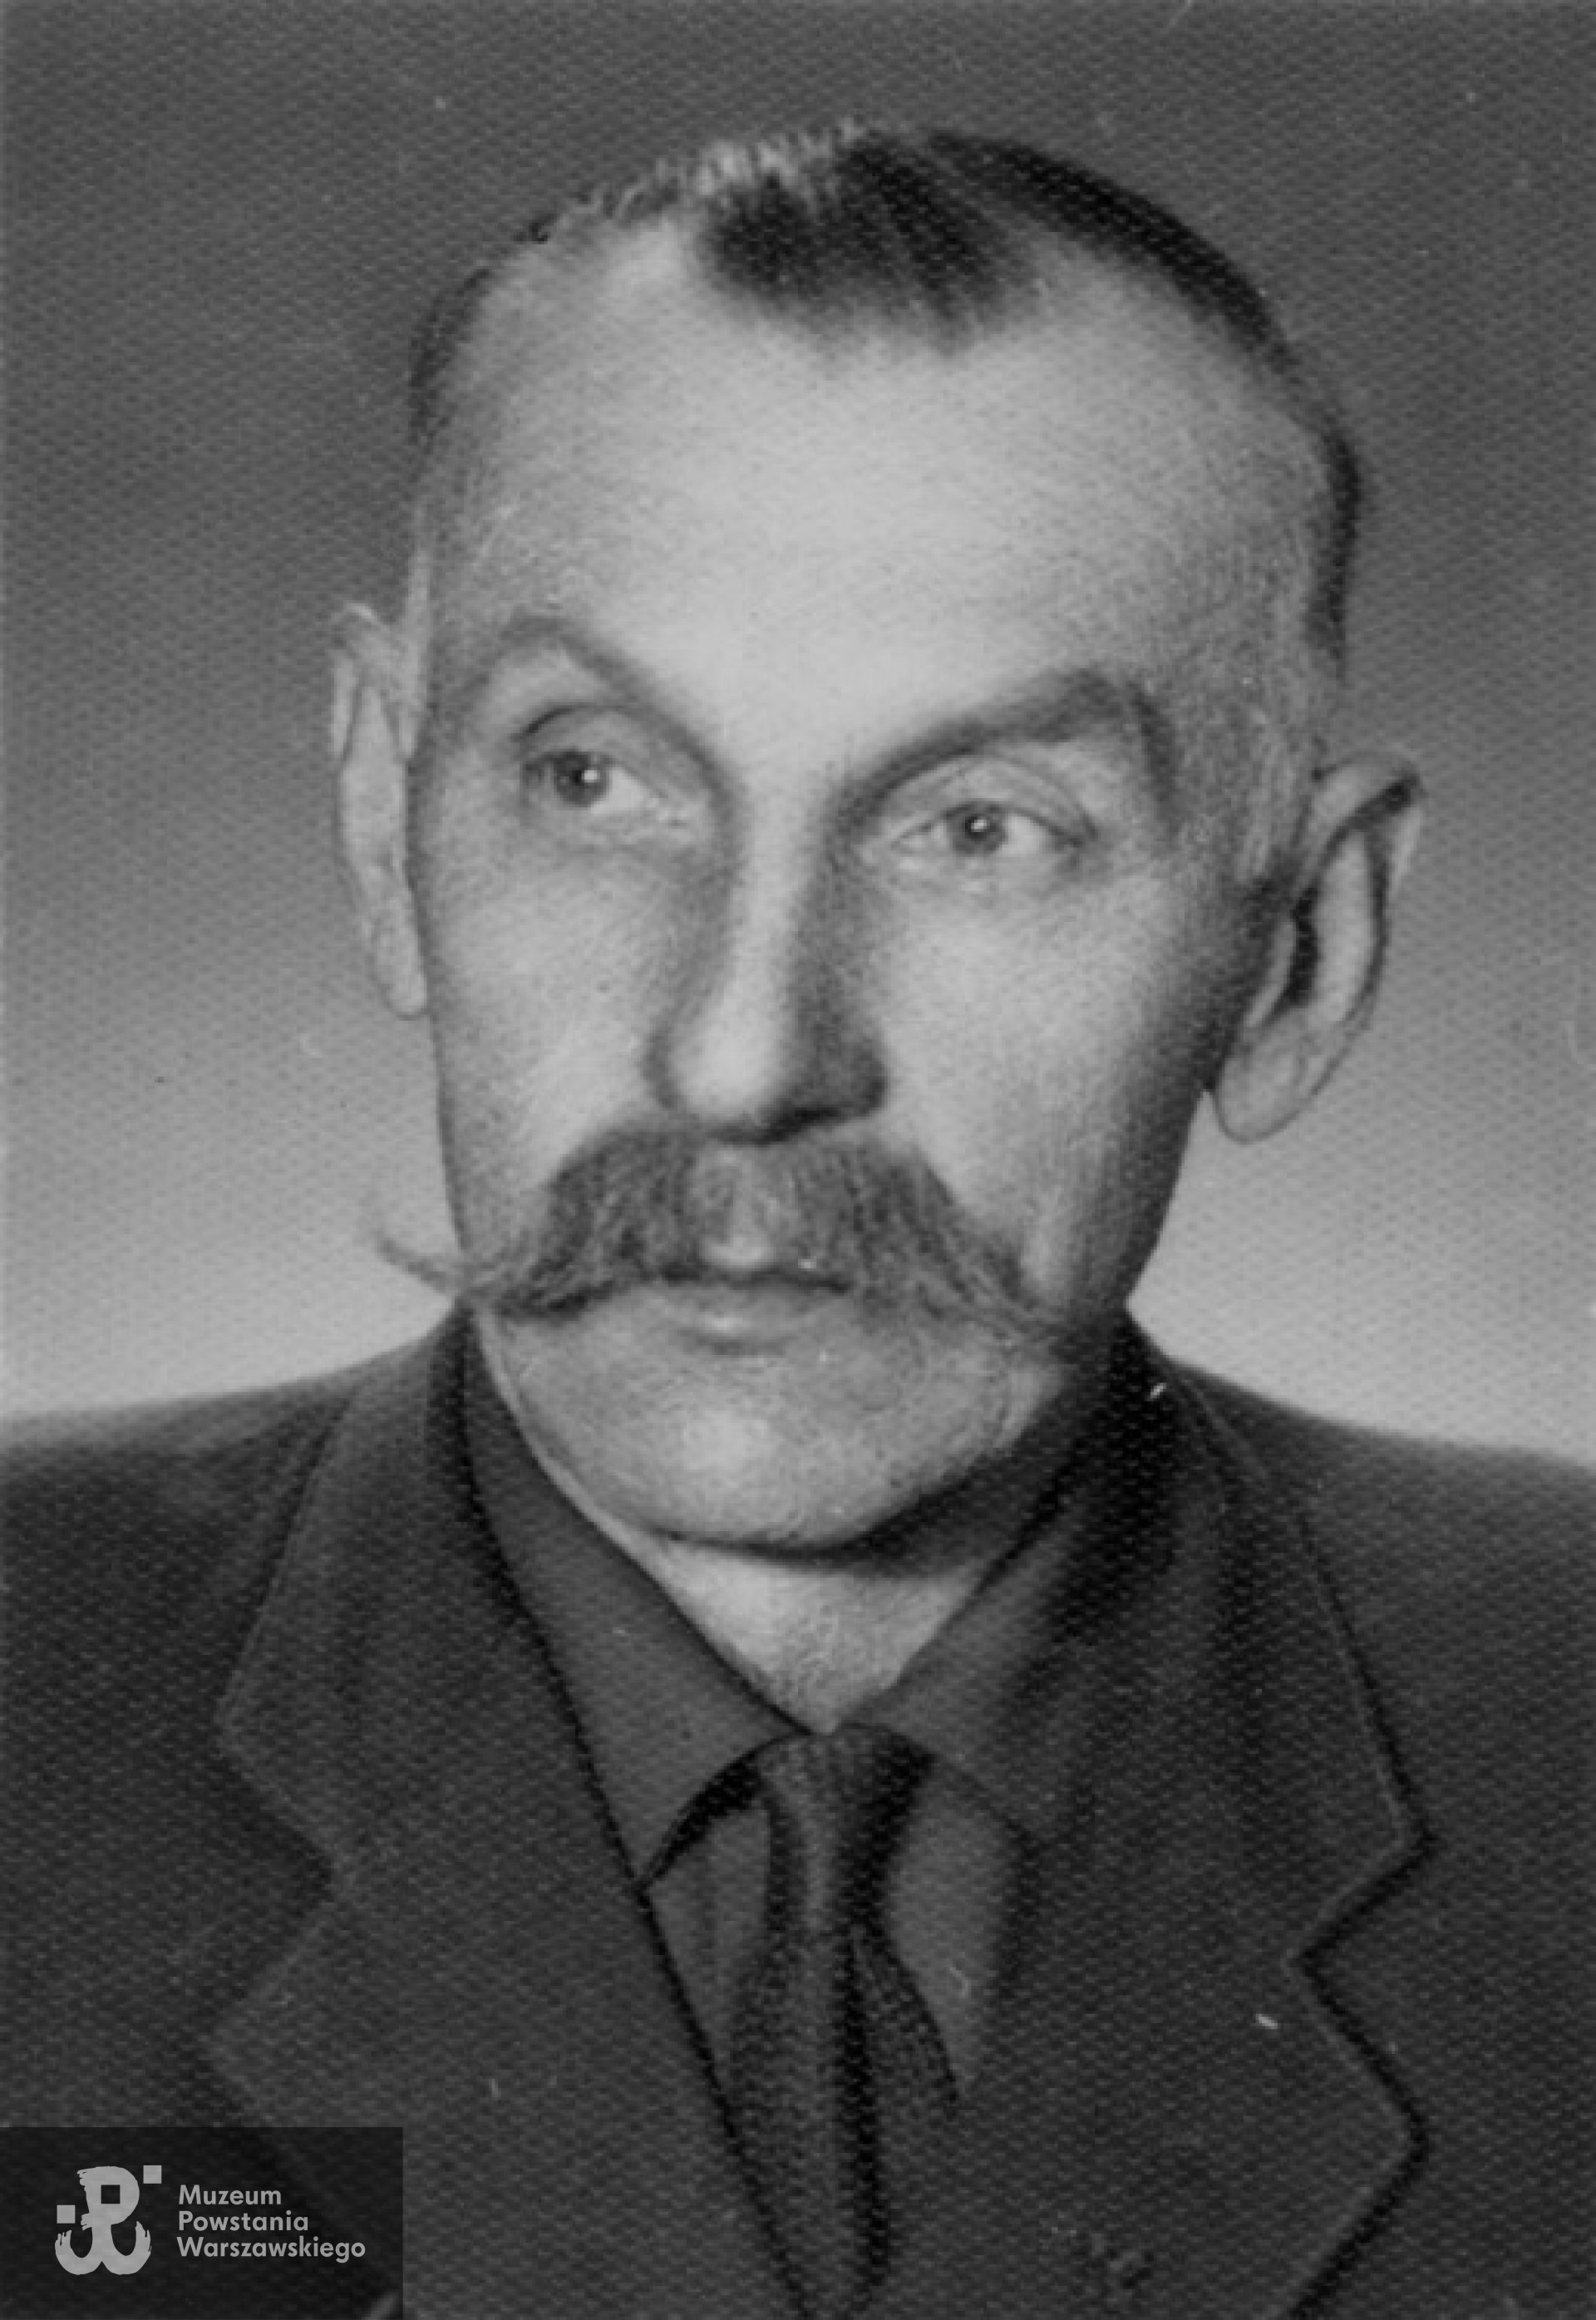 Mieczysław Piechowski "Mały" (1899 - 1968)